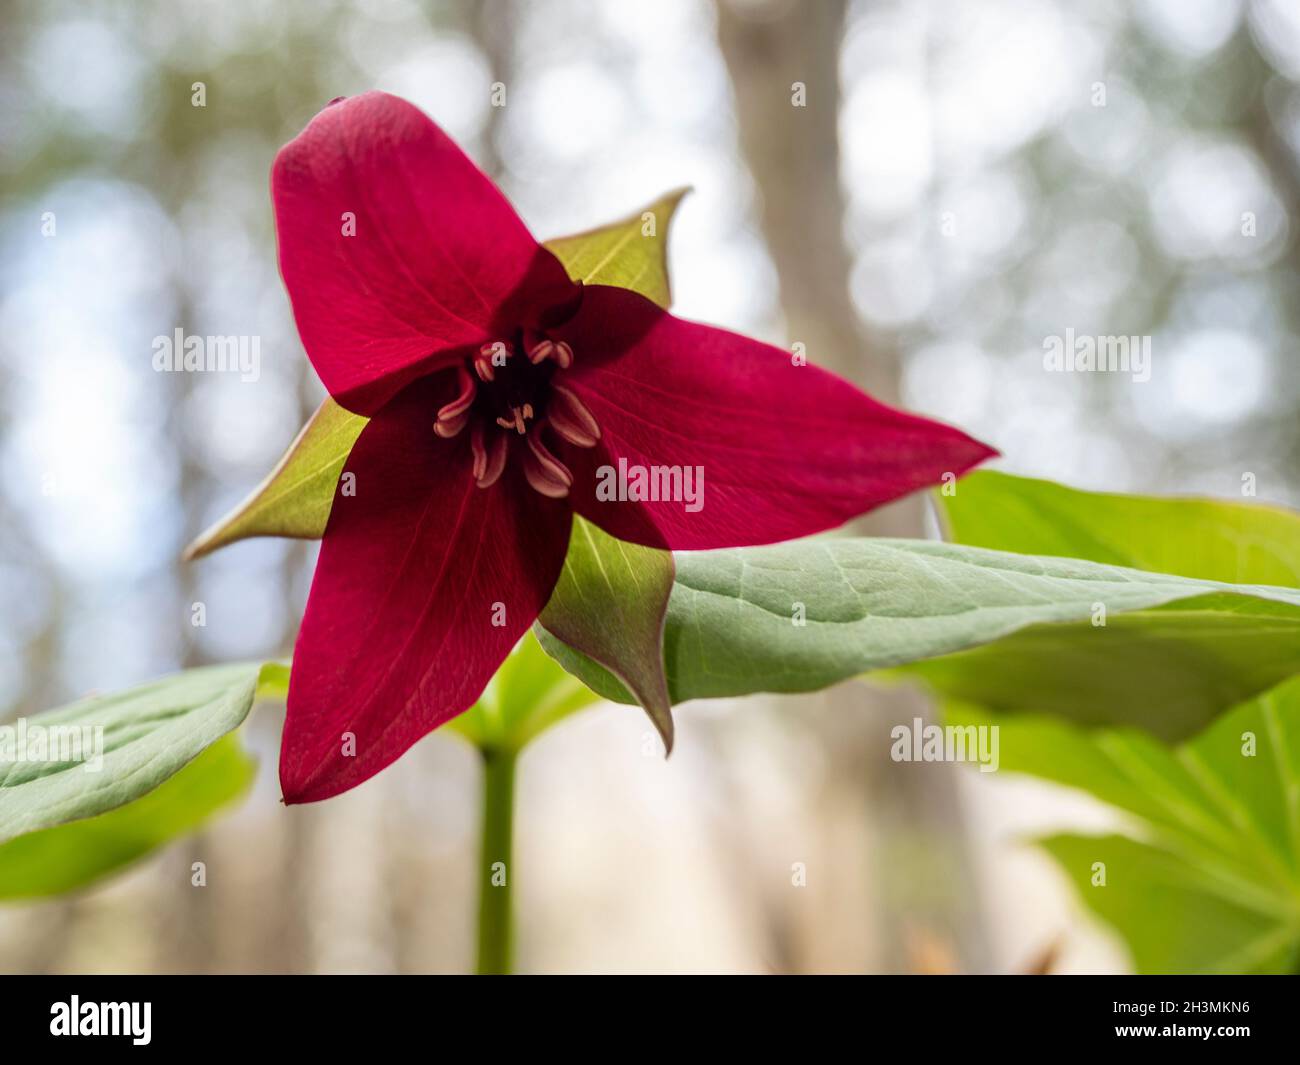 Trillium rojo floreciendo en el bosque: Una flor solitaria de un trillium rojo asiente contra el dosel fuera del foco del bosque arriba. Foto de stock